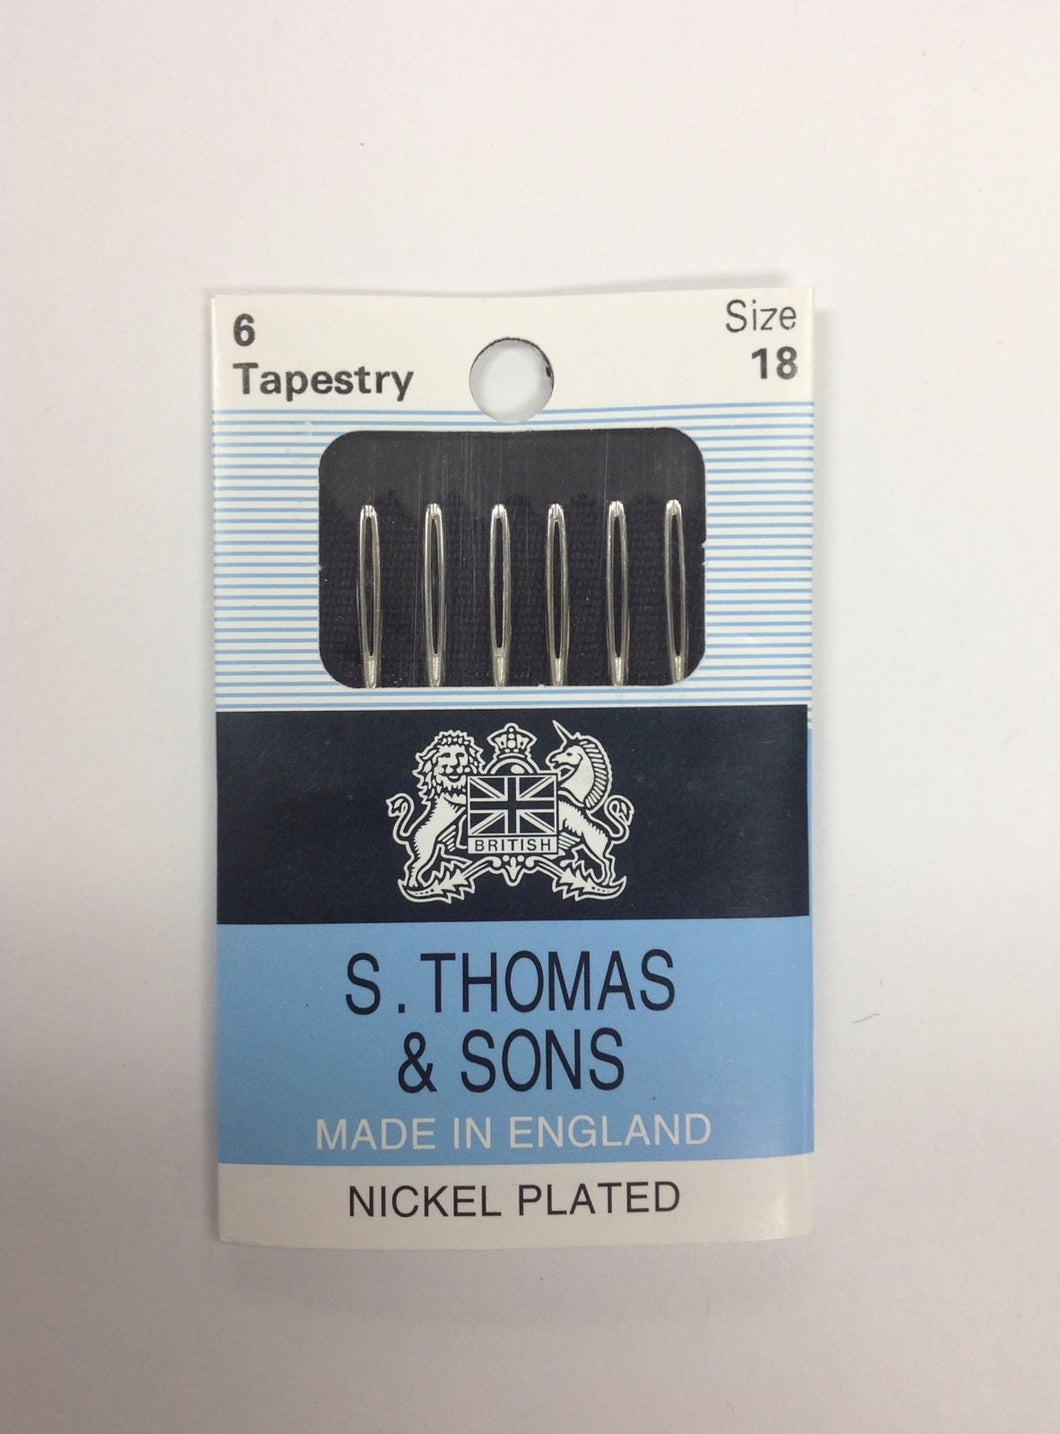 S. Thomas Tapestry Needles